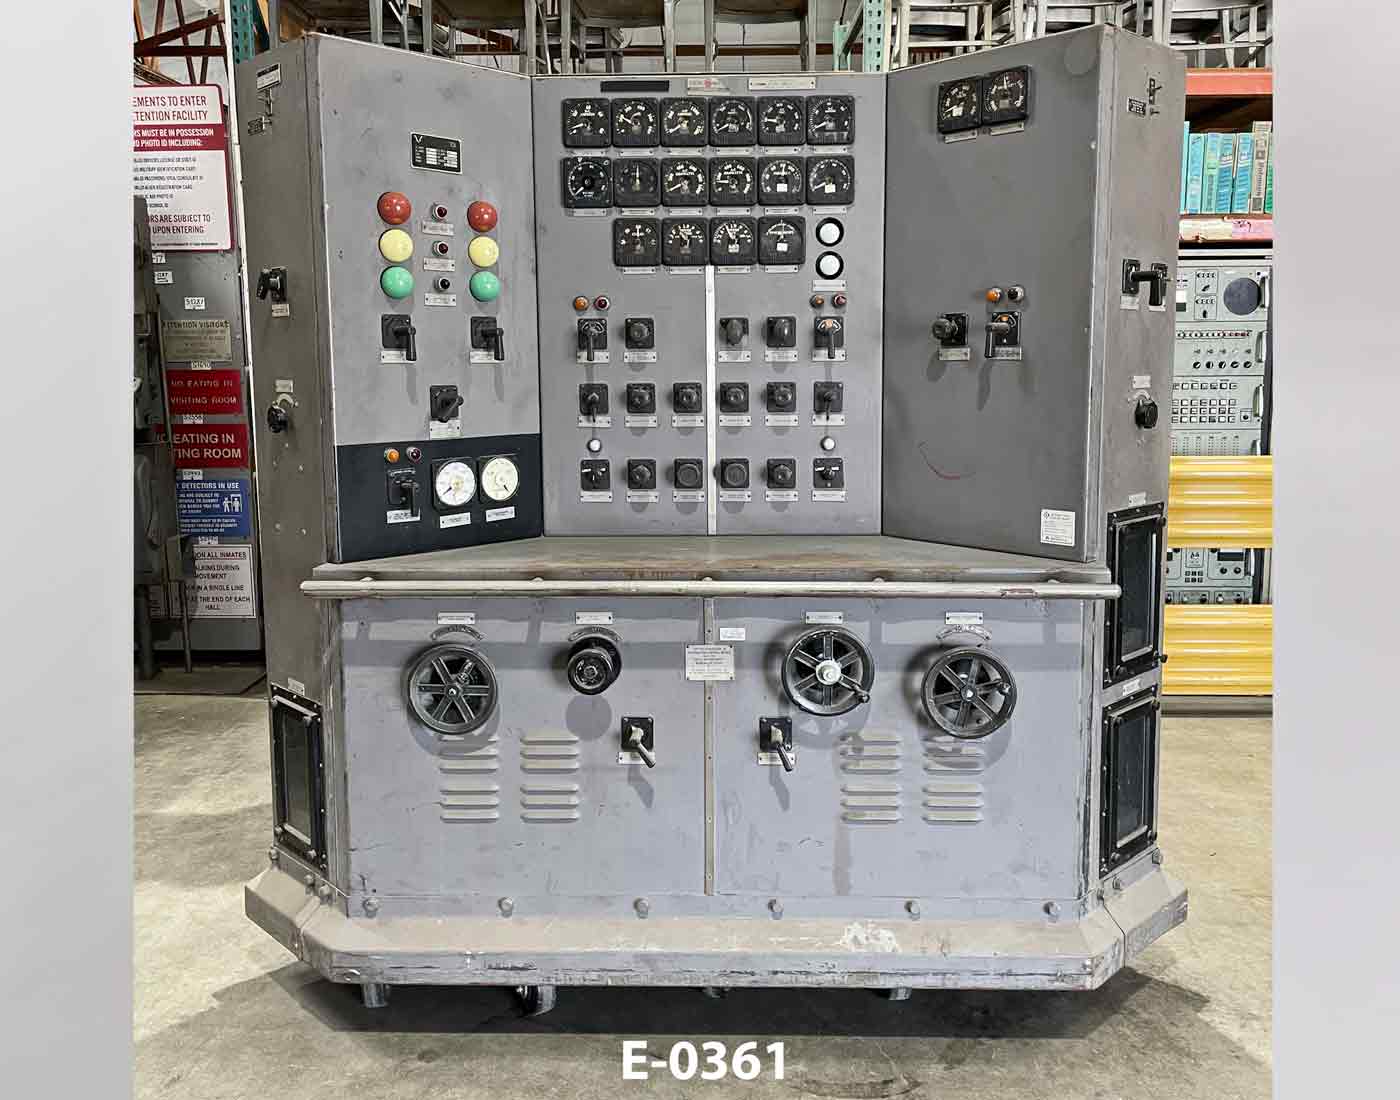 Electronic Control Unit E-0361